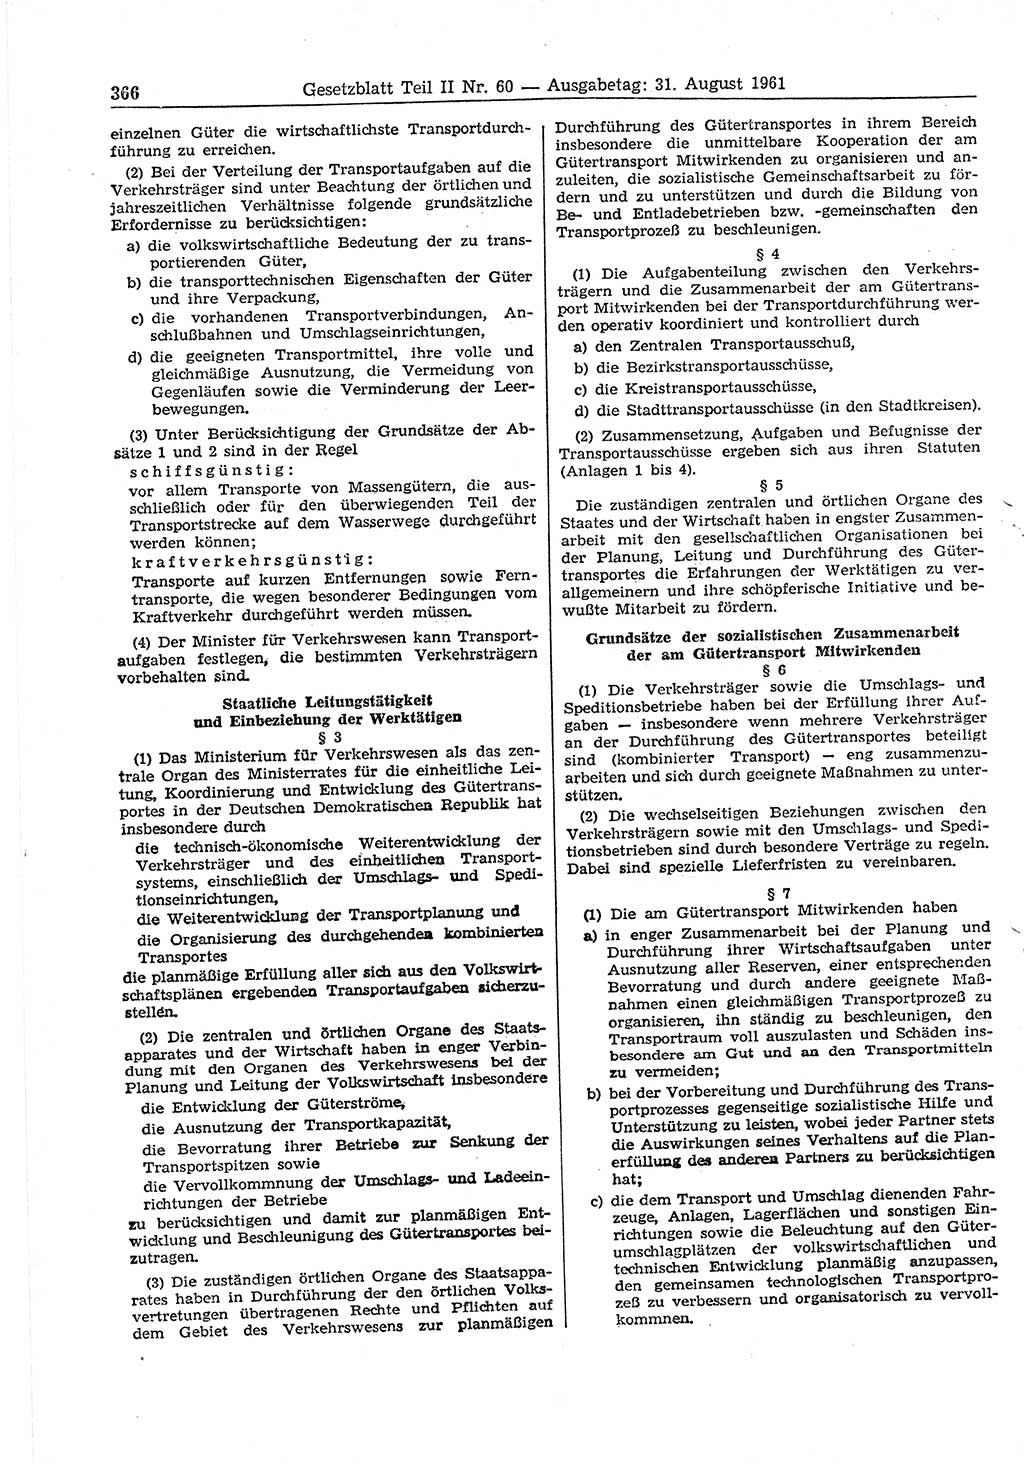 Gesetzblatt (GBl.) der Deutschen Demokratischen Republik (DDR) Teil ⅠⅠ 1961, Seite 366 (GBl. DDR ⅠⅠ 1961, S. 366)